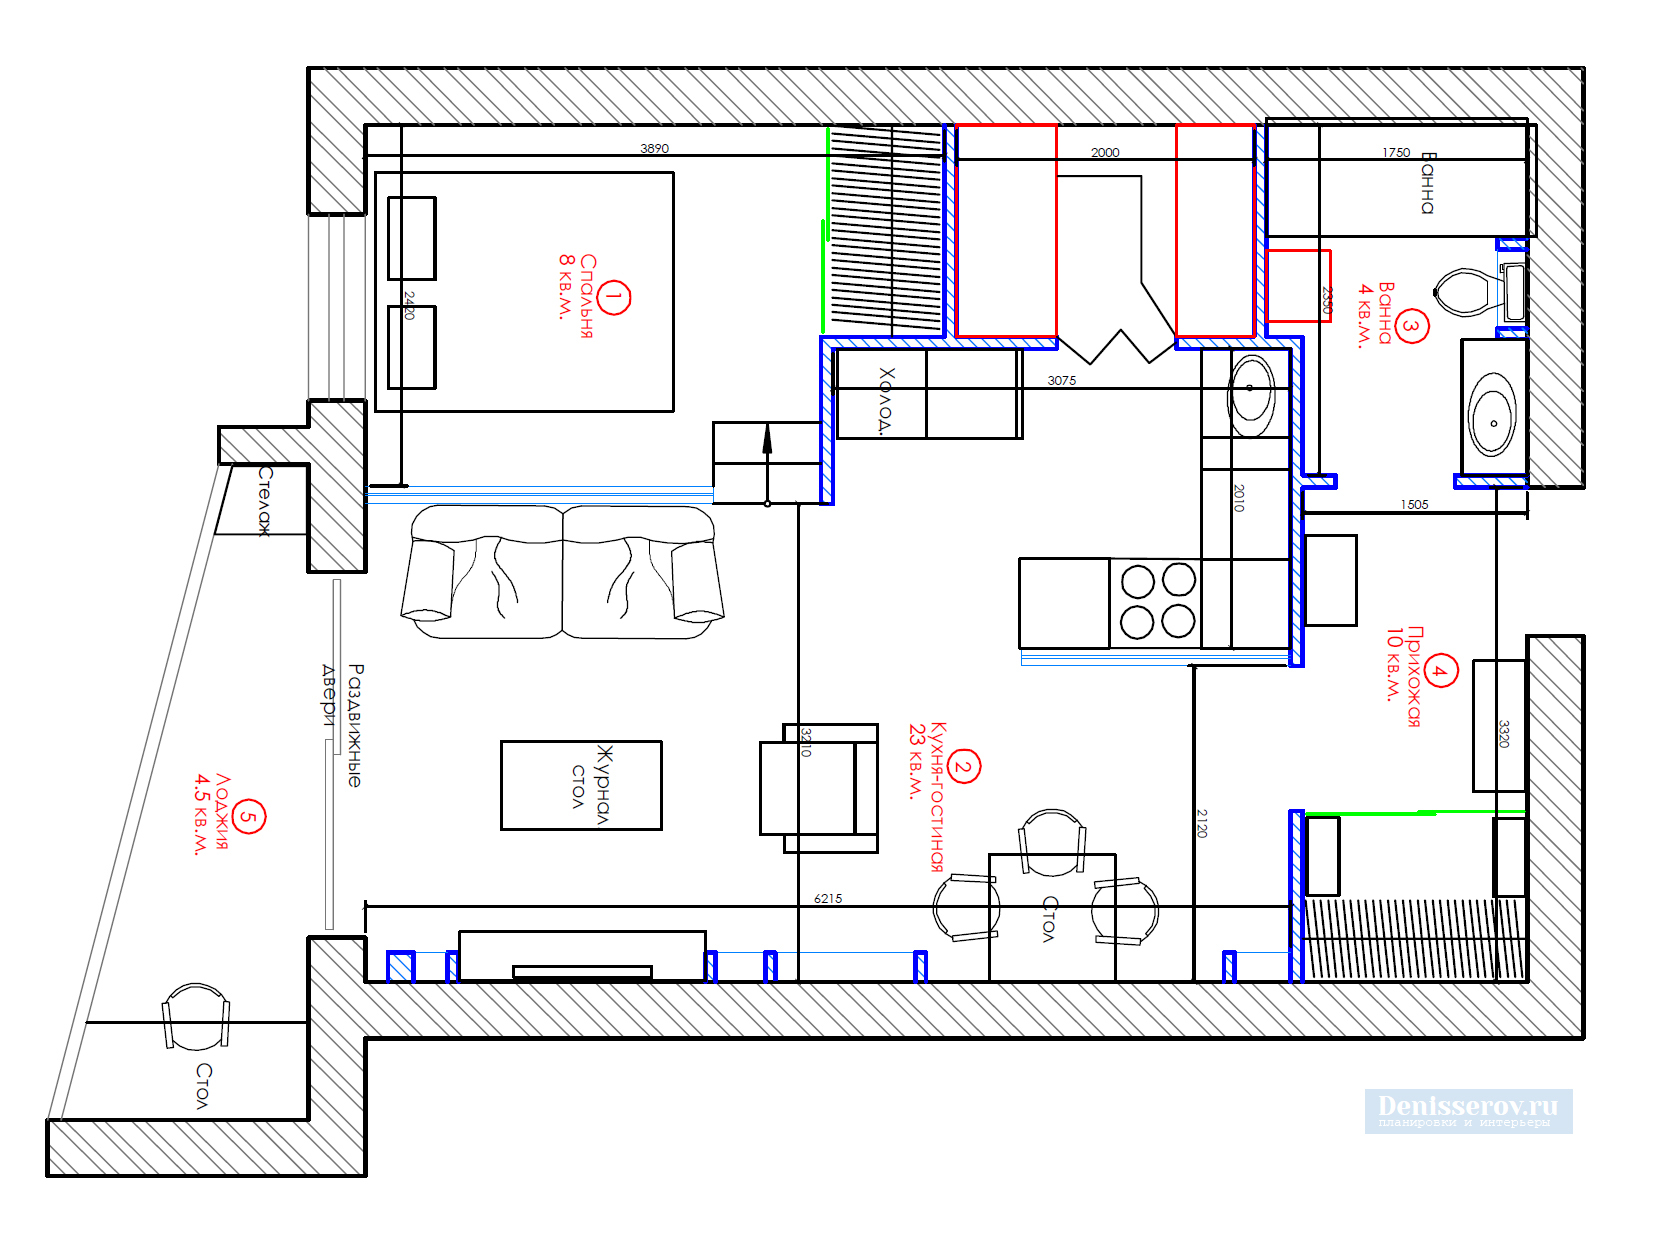 Дизайн однокомнатной квартиры 45 кв.м. - советы, фото